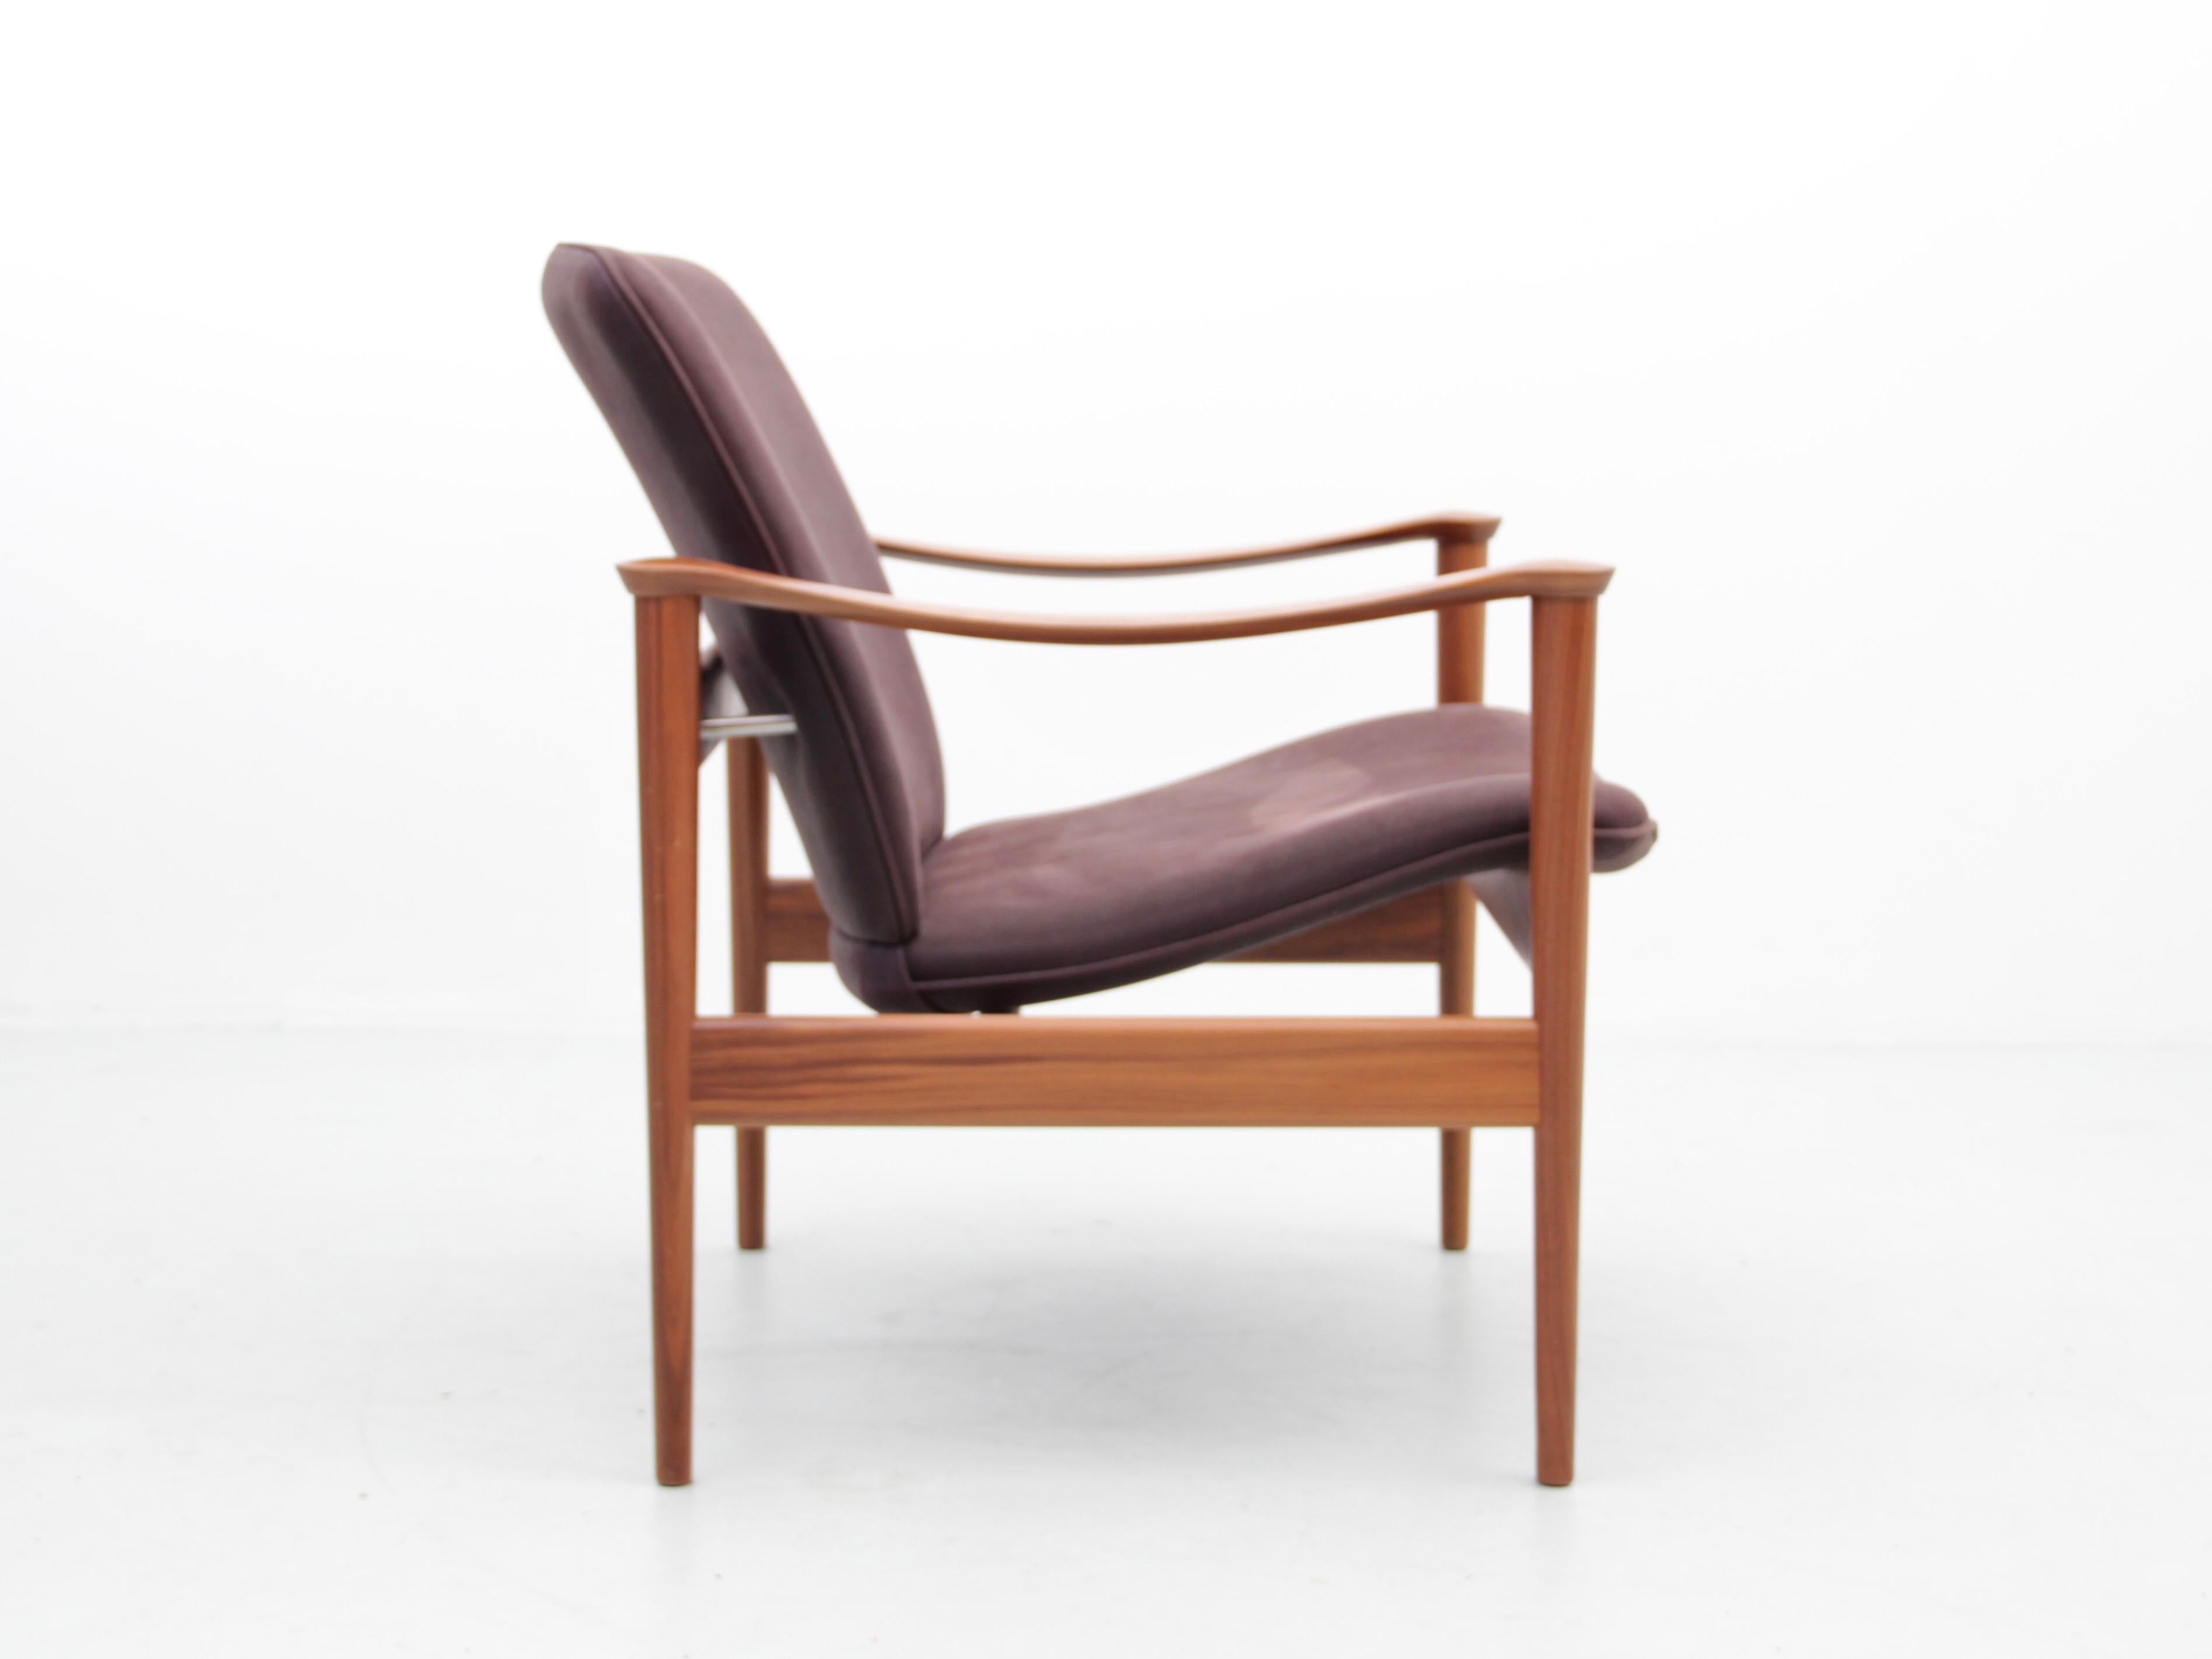 Moderner skandinavischer 711 lounge.chair von Fredrik Kayser aus der Jahrhundertmitte. Neue Ausgabe. Er wurde 1960 von Fredrik A. Kayser entworfen und wird nun von dem norwegischen Hersteller Hjelle neu aufgelegt.
Das Modell auf den Bildern ist in